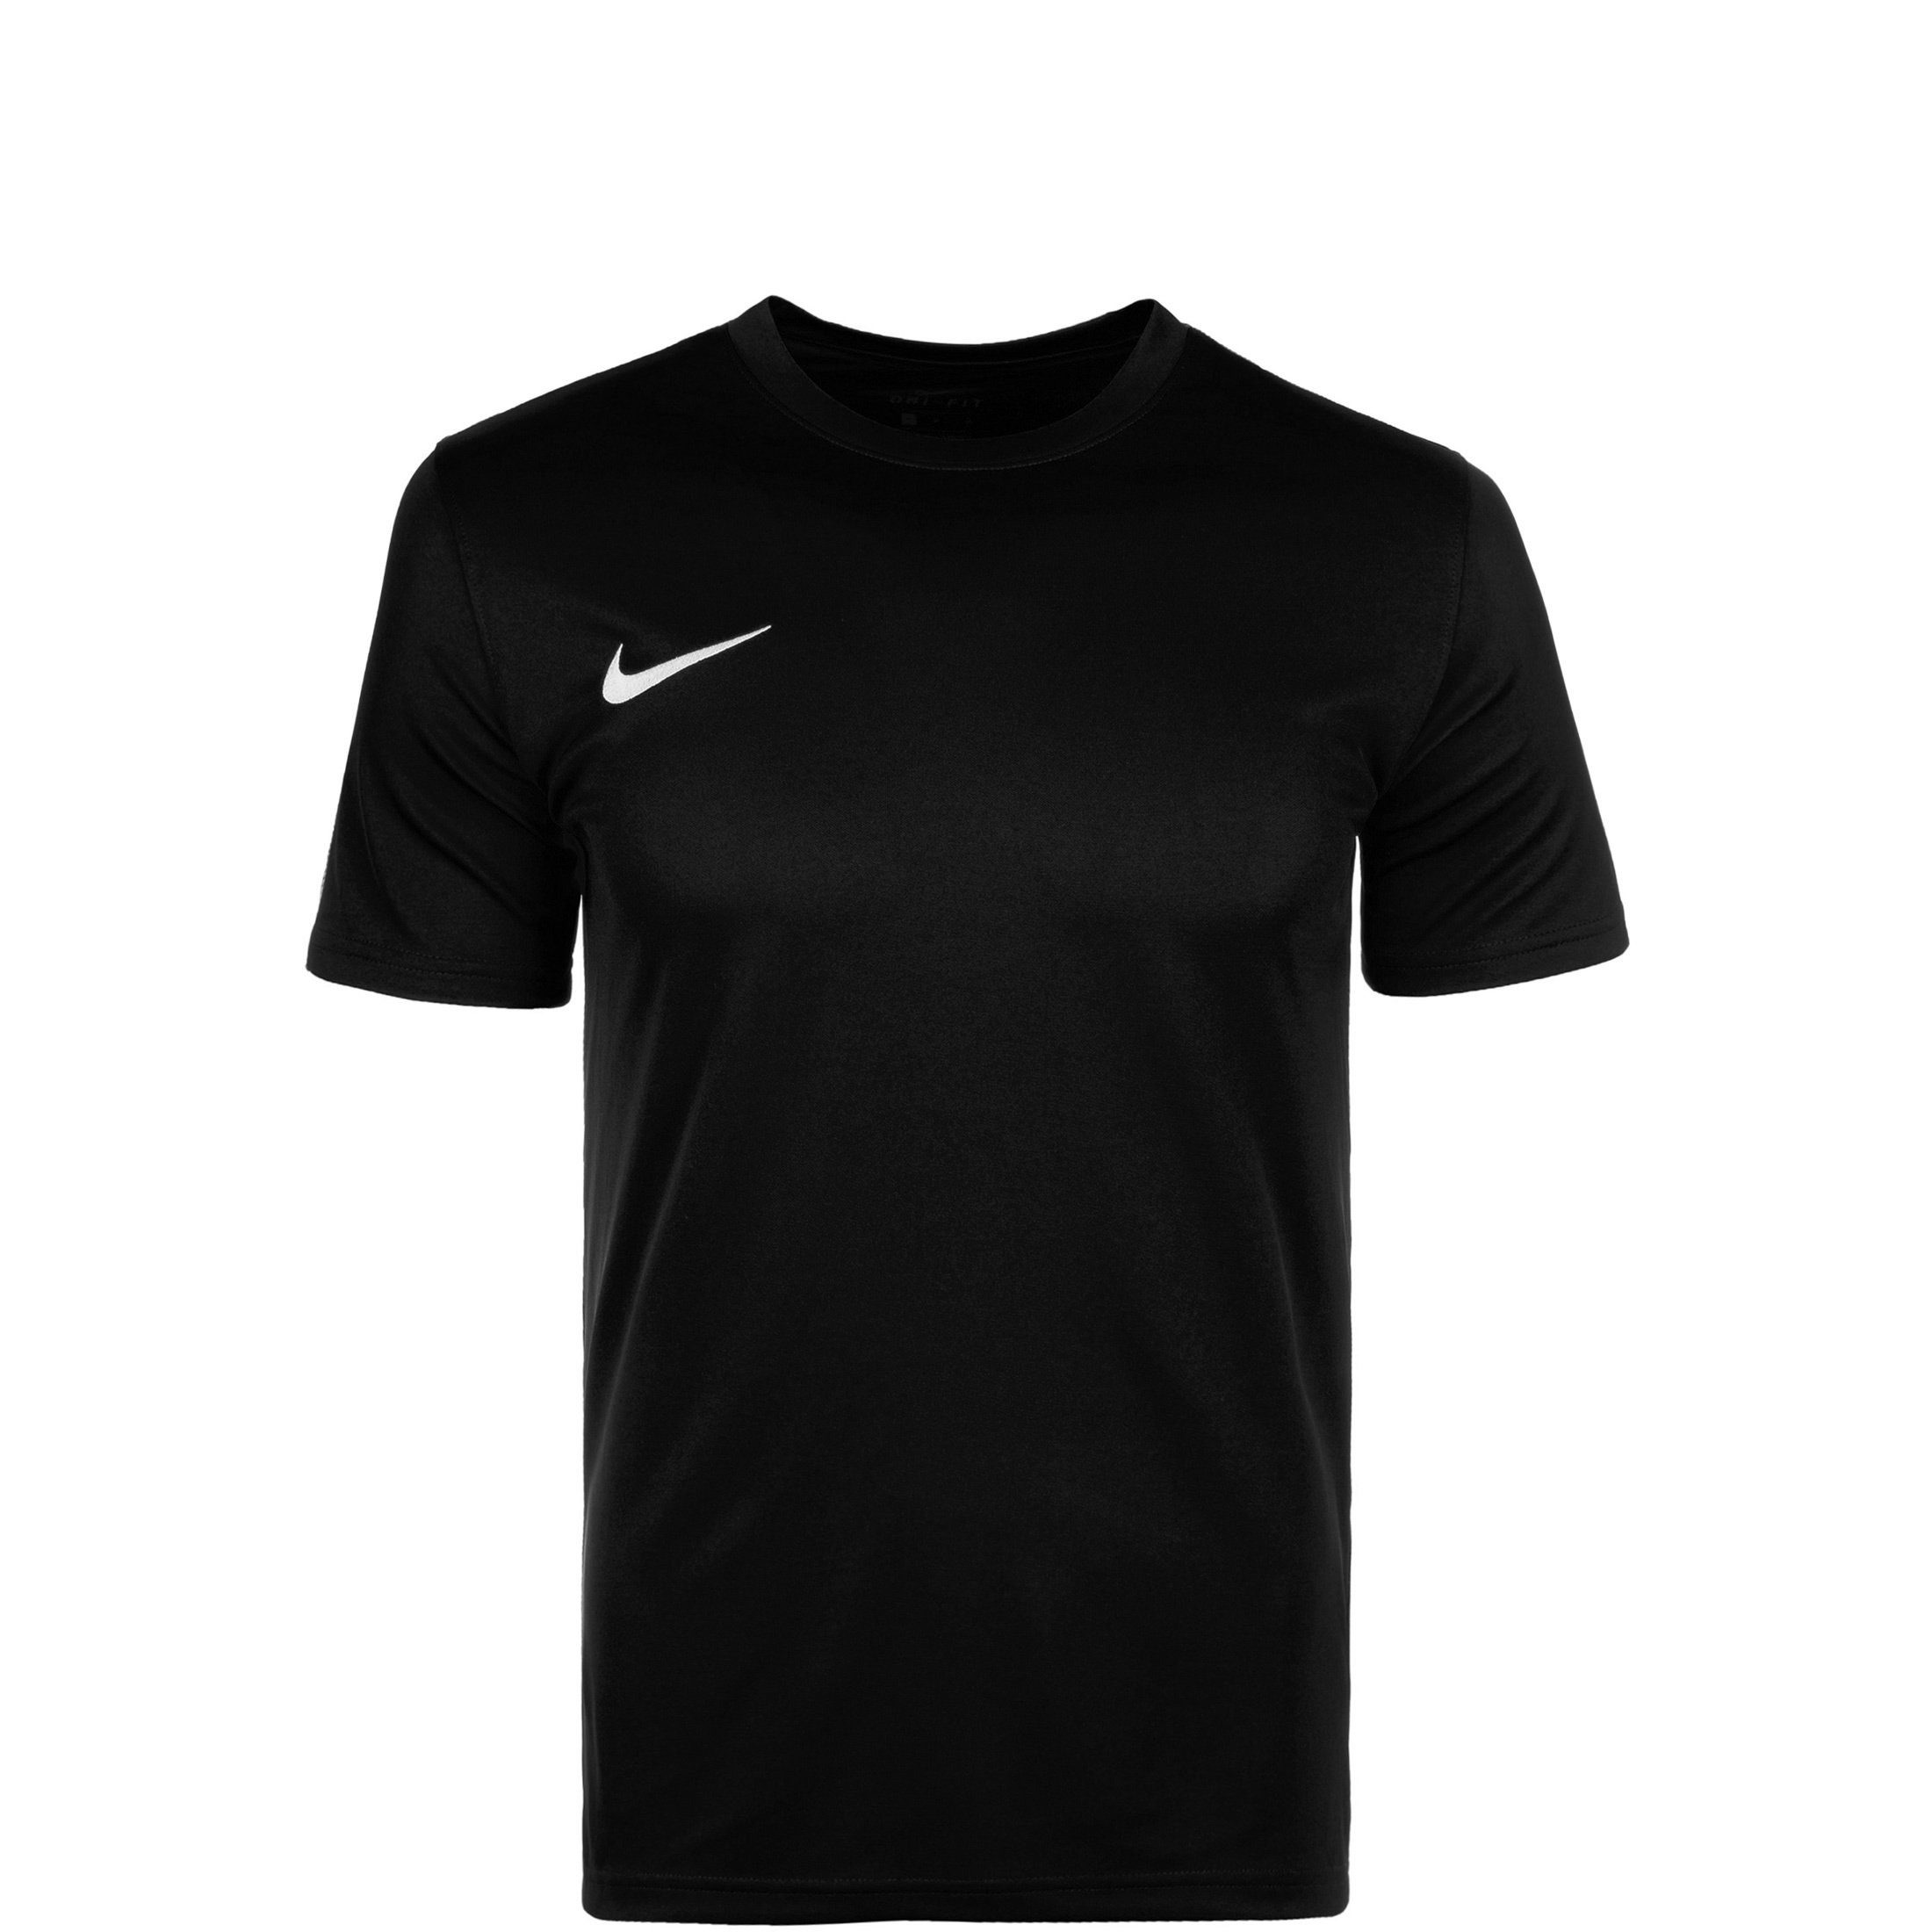 Nike Jungen Shirts online kaufen | OTTO